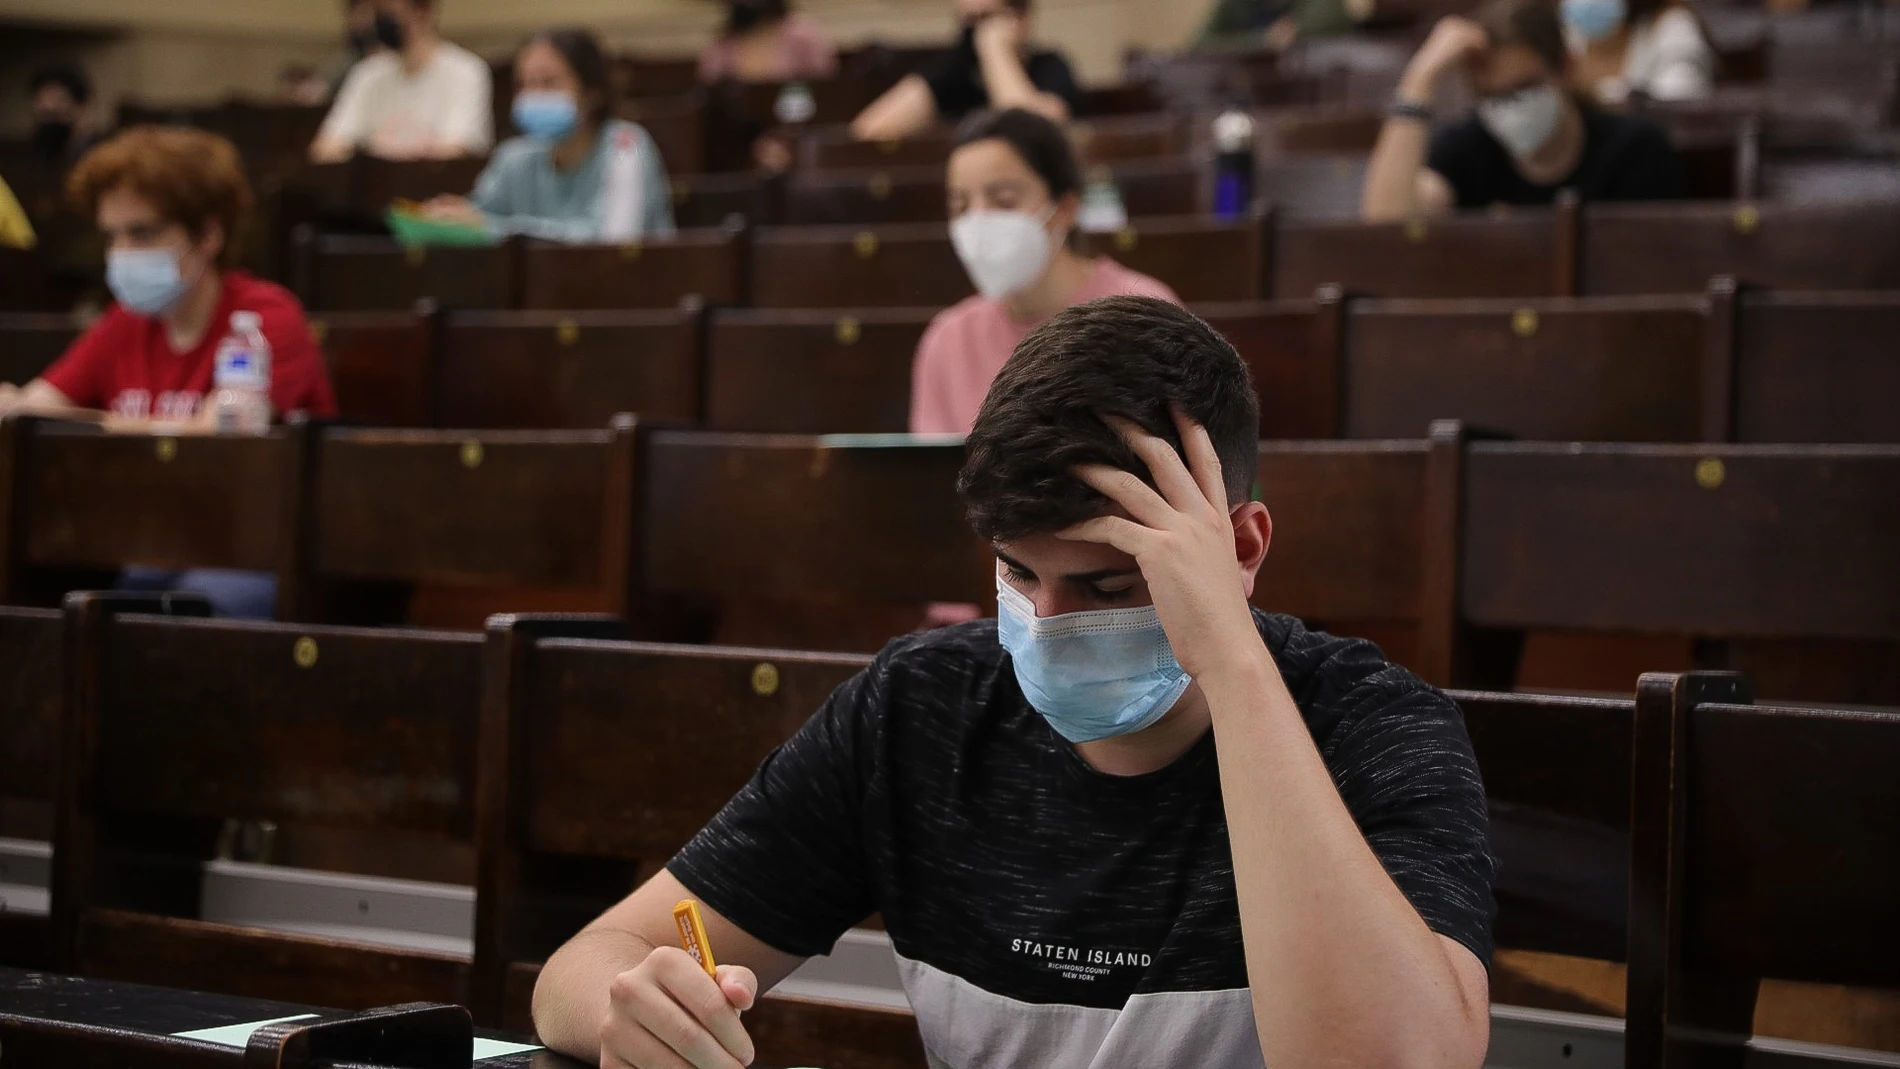 Un estudiante durante la prueba de acceso a la Universidad del año 2021 | Fuente: EUROPA PRESS - MARÍA JOSÉ LÓPEZ